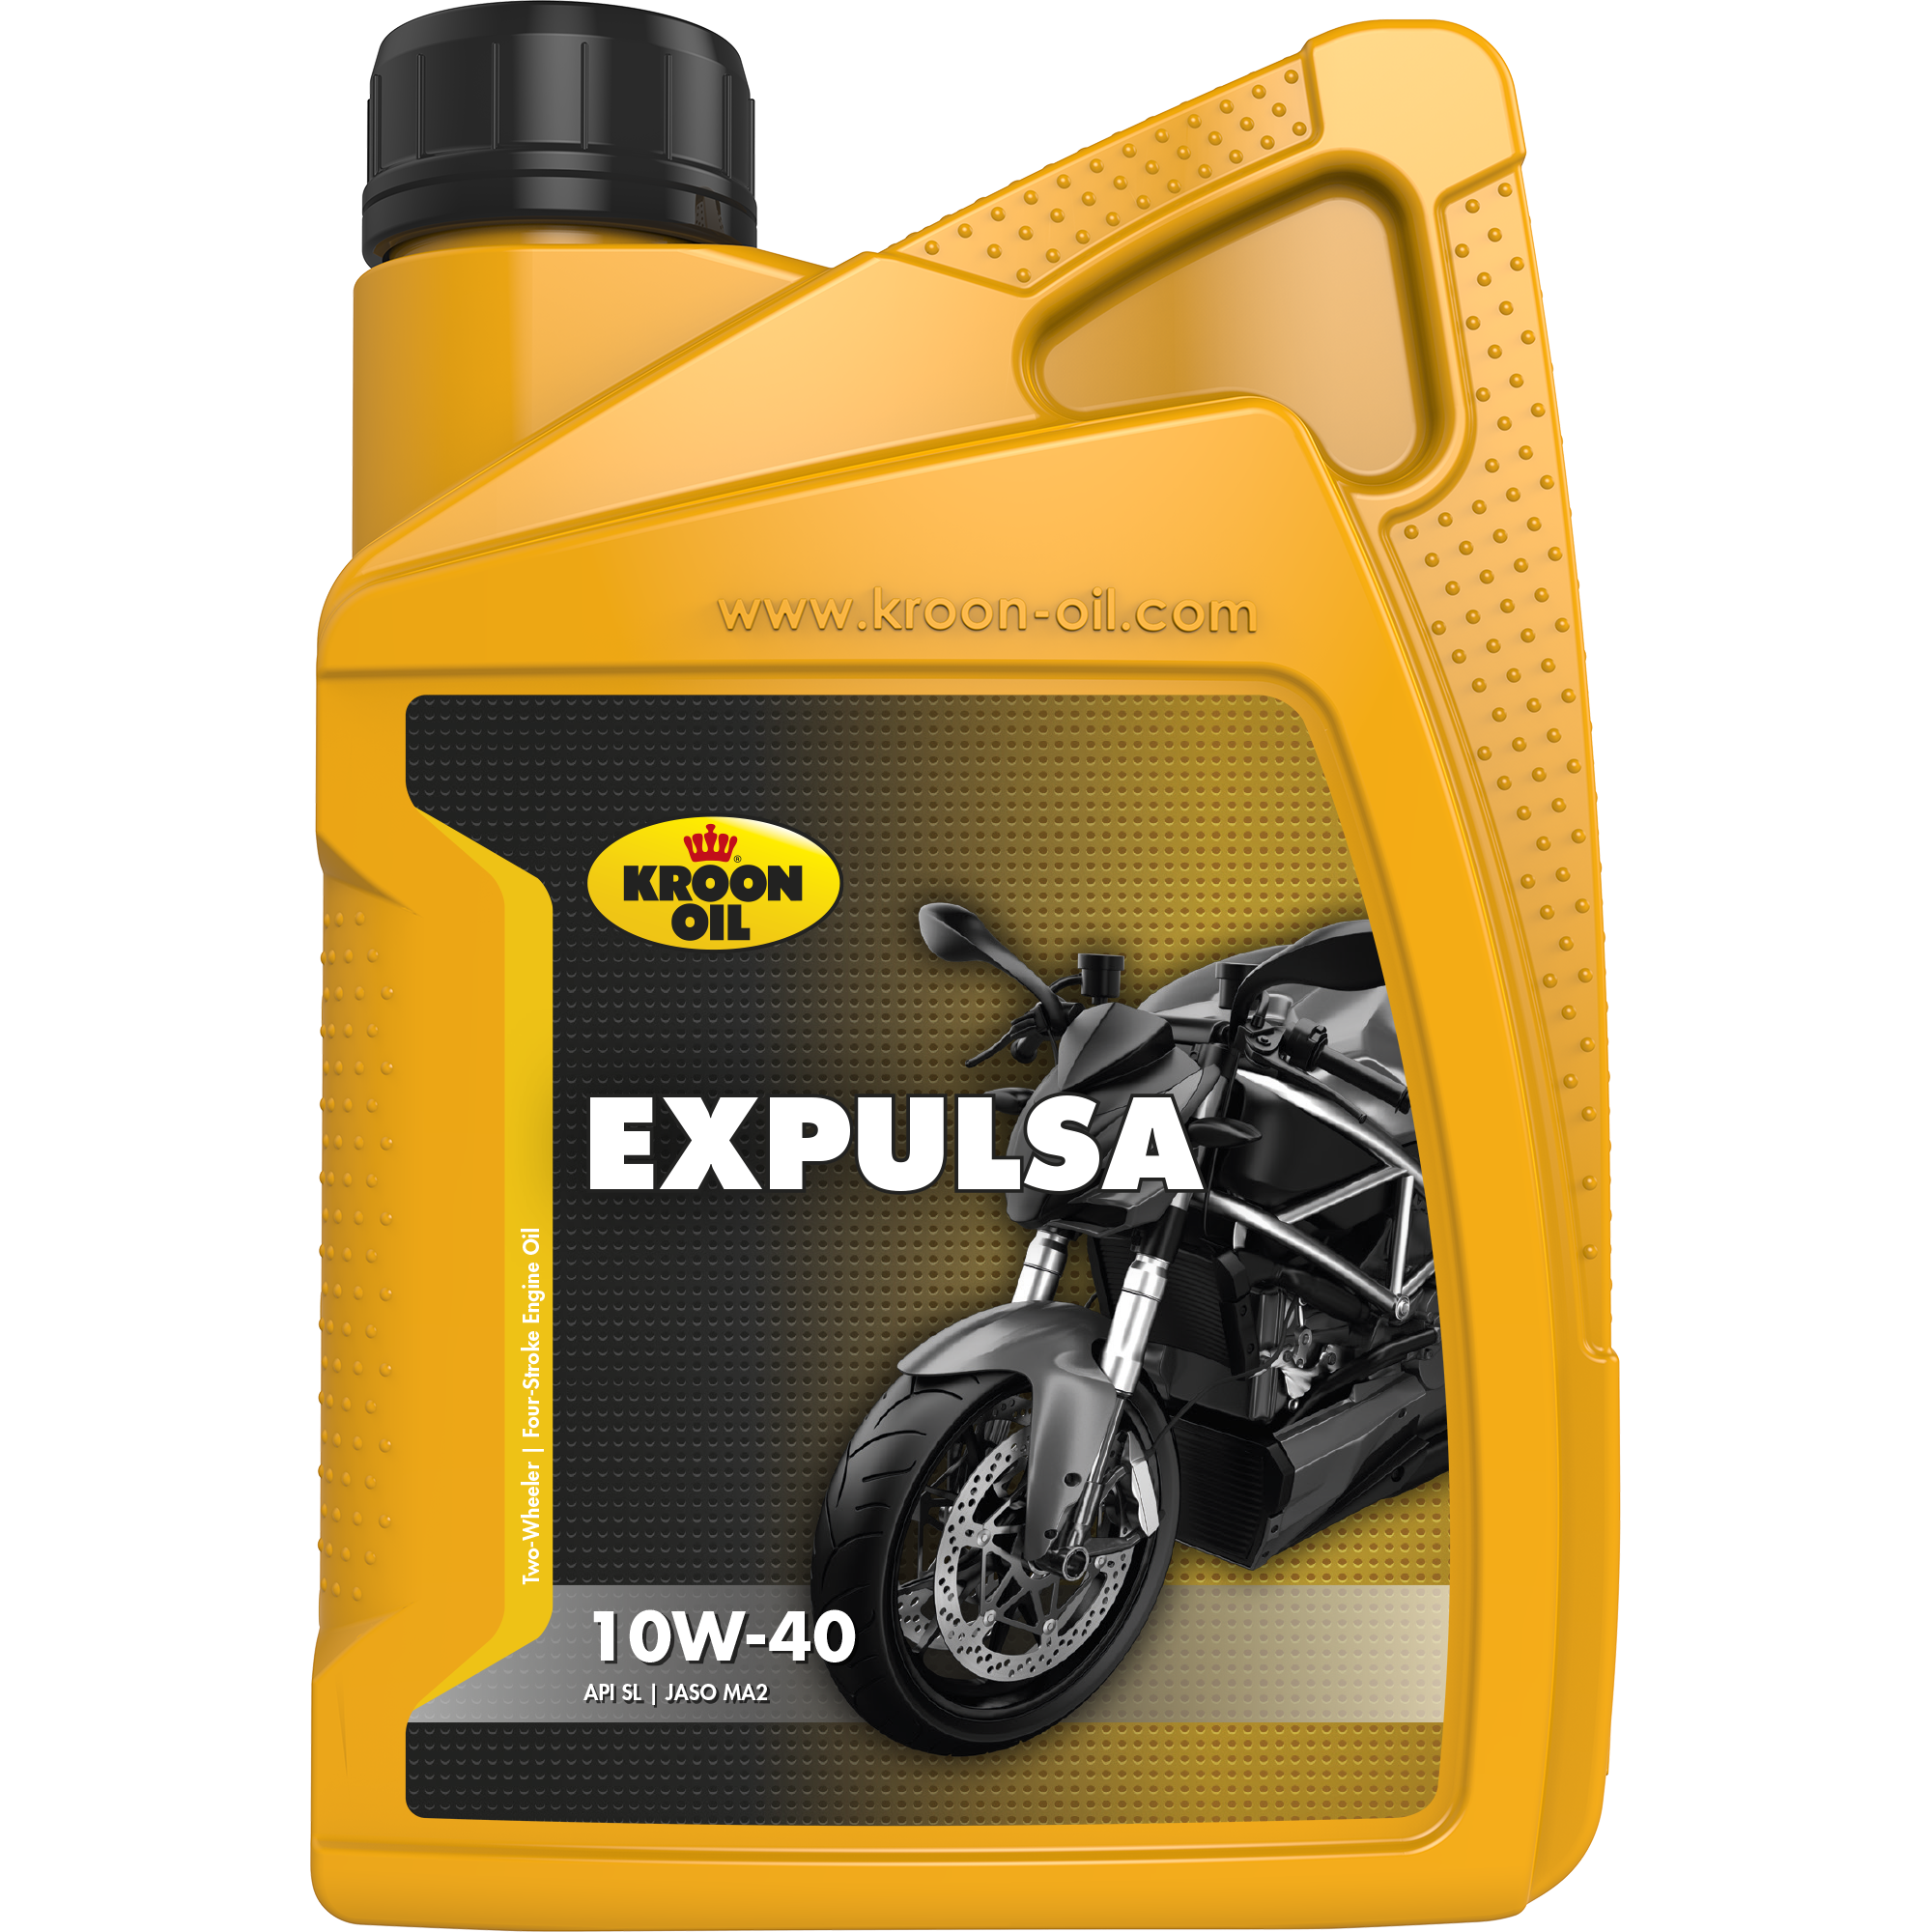 02227-1 Expulsa 10W-40 is een semi-synthetische motorolie speciaal voor gebruik in alle hoogtoerige 4-takt motorfietsen.